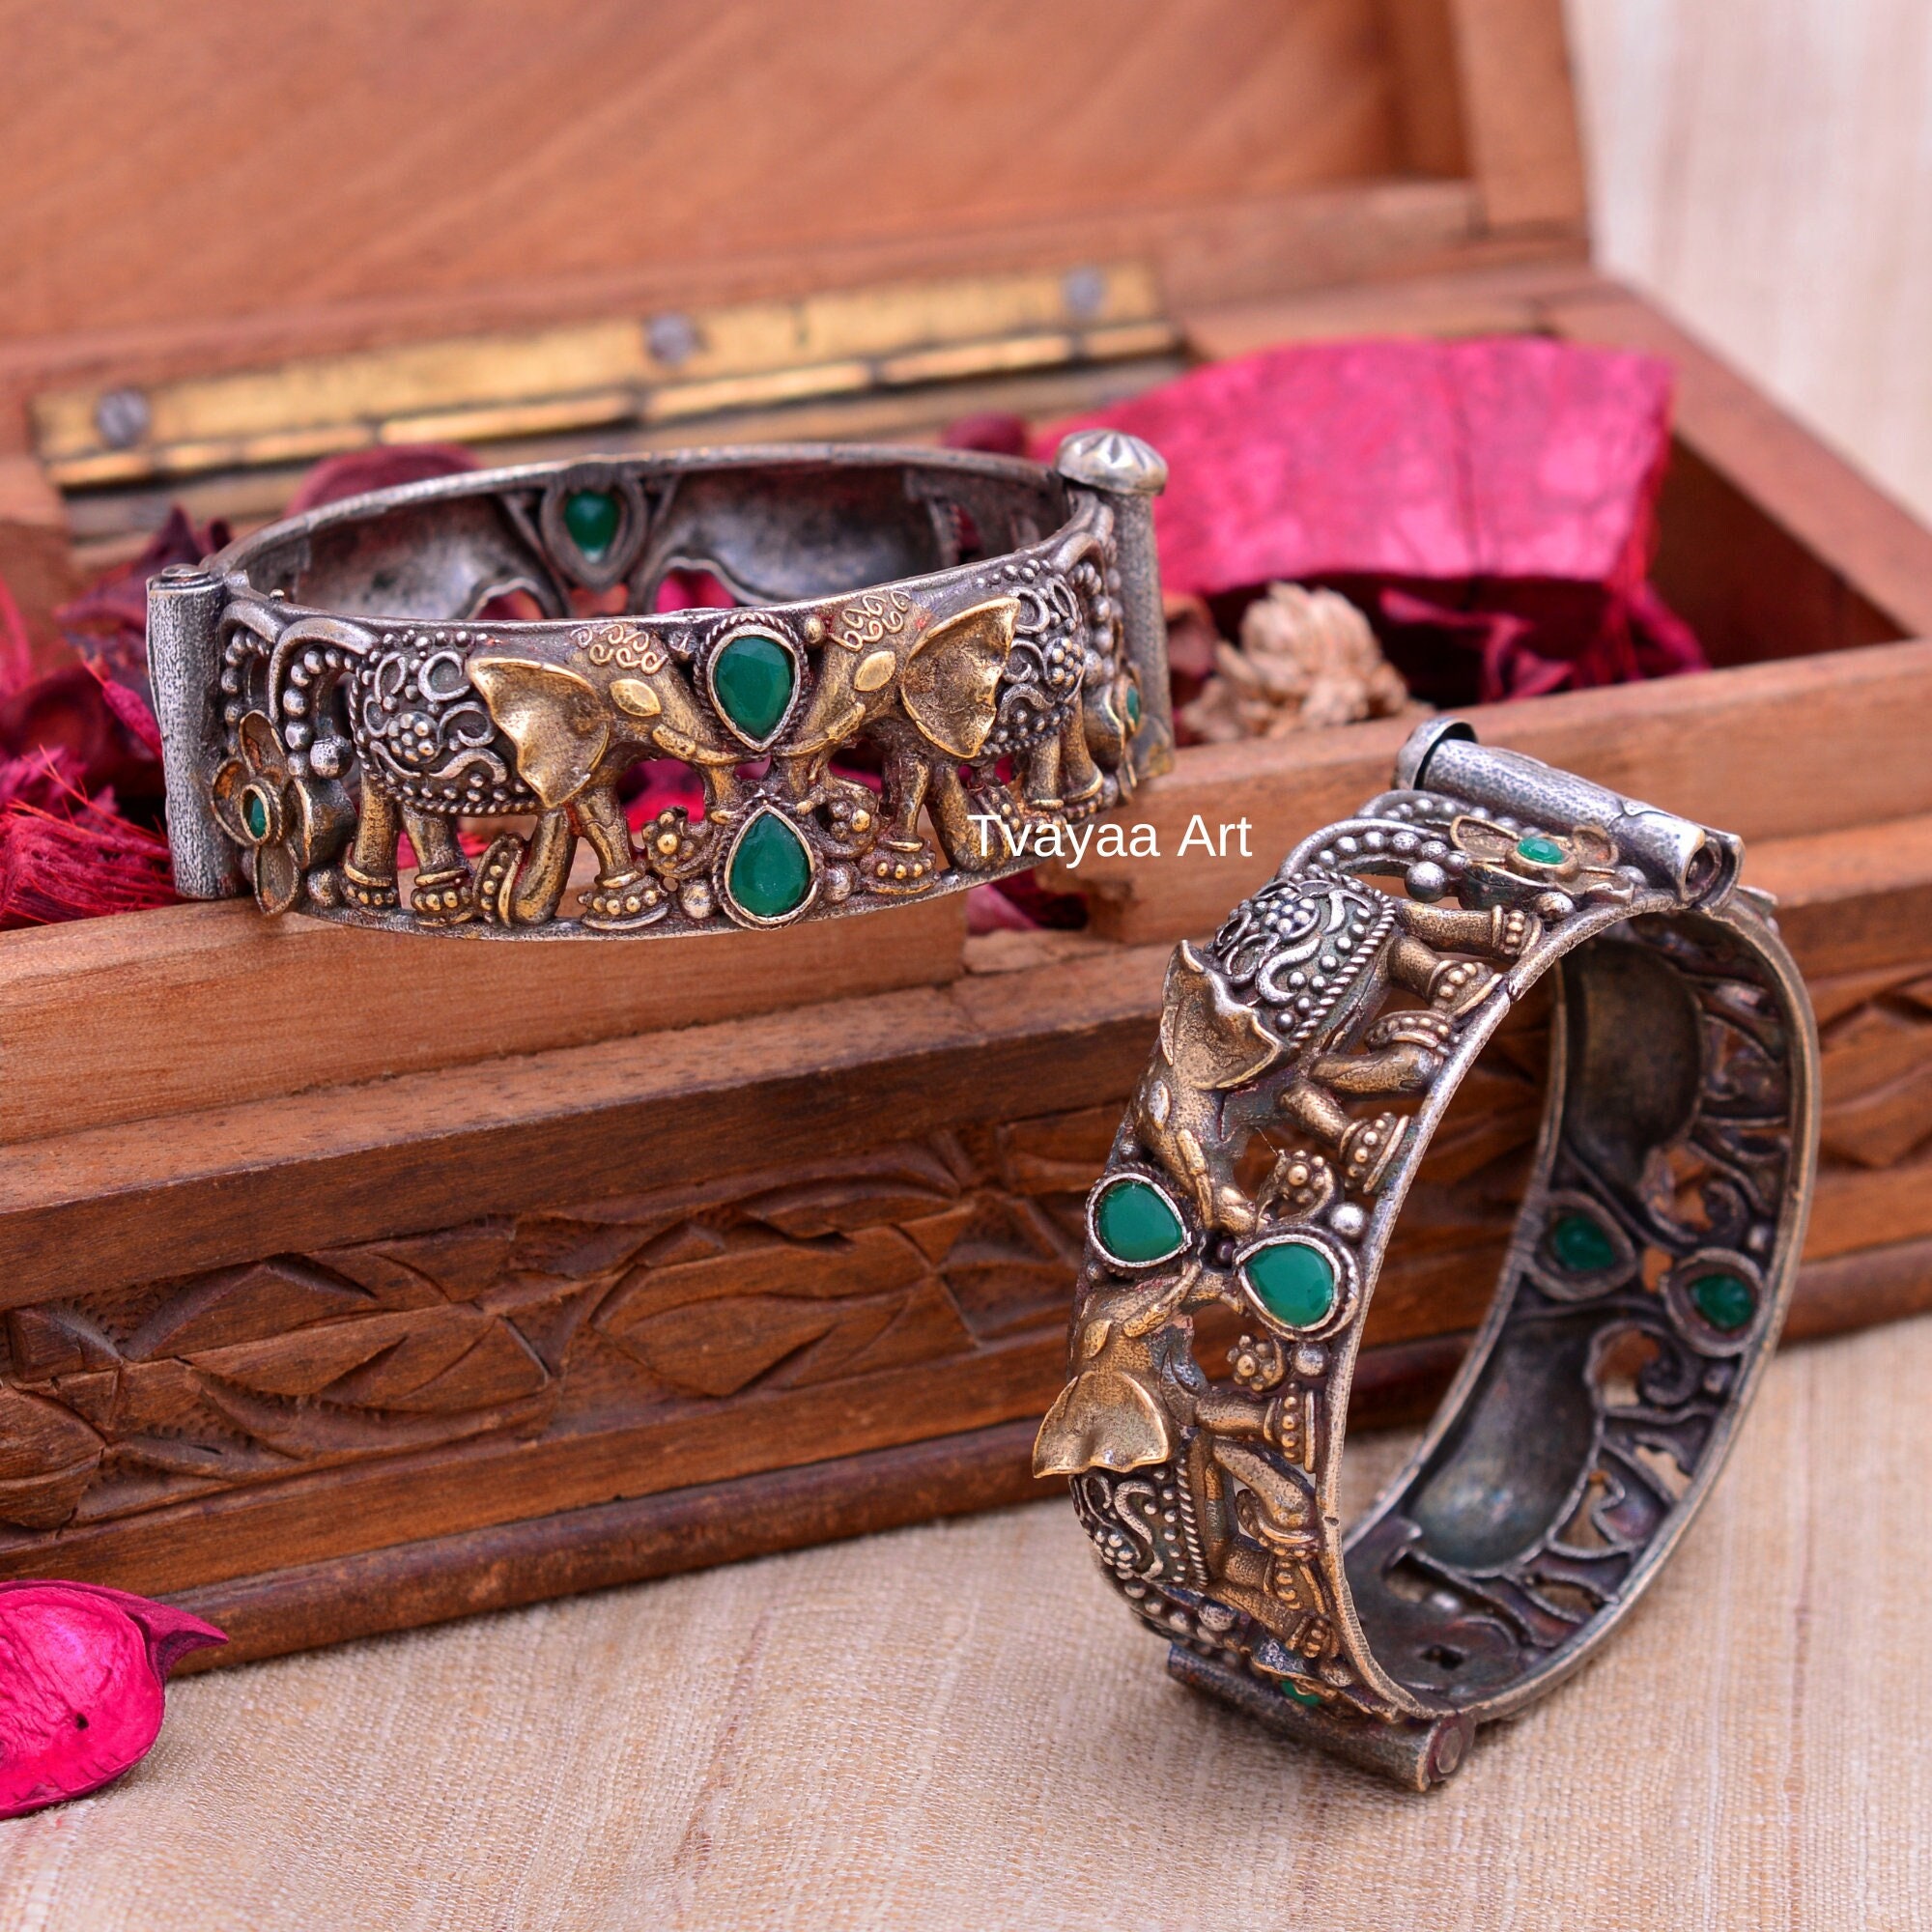 Oxidized Brass Cuff Bracelet with Traditional Armenian Motif